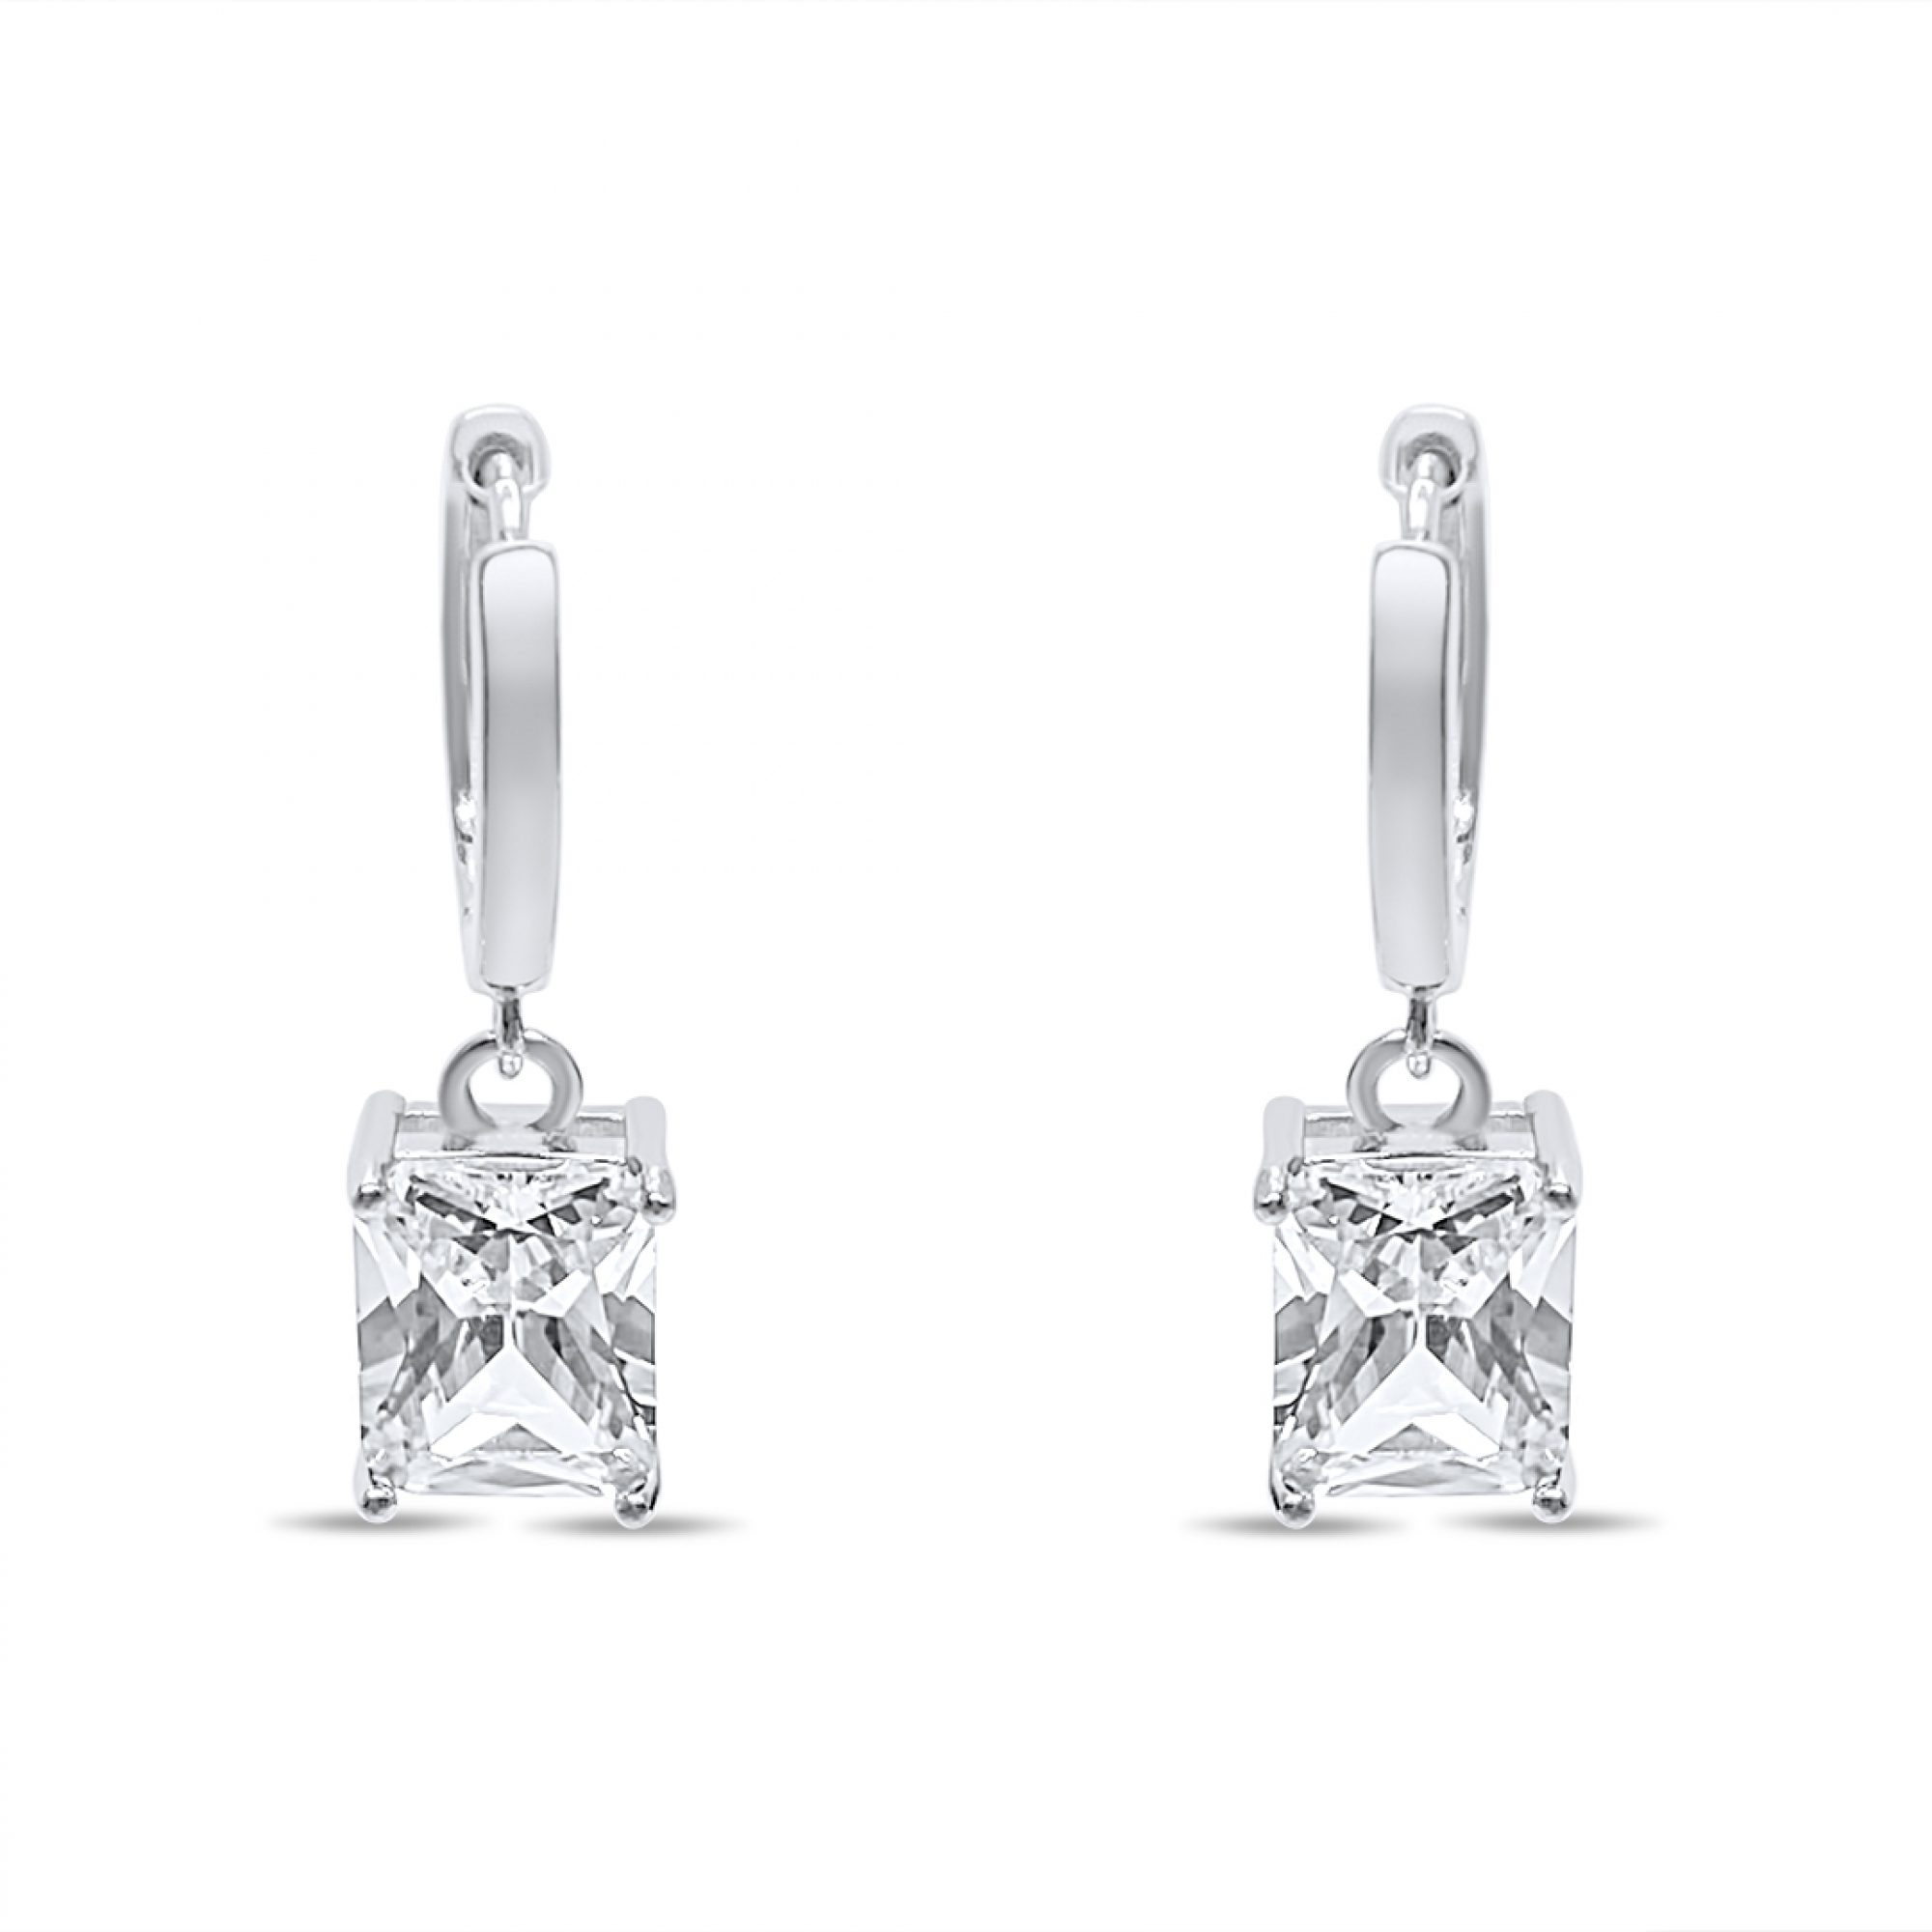 Silver earrings with zircon stone